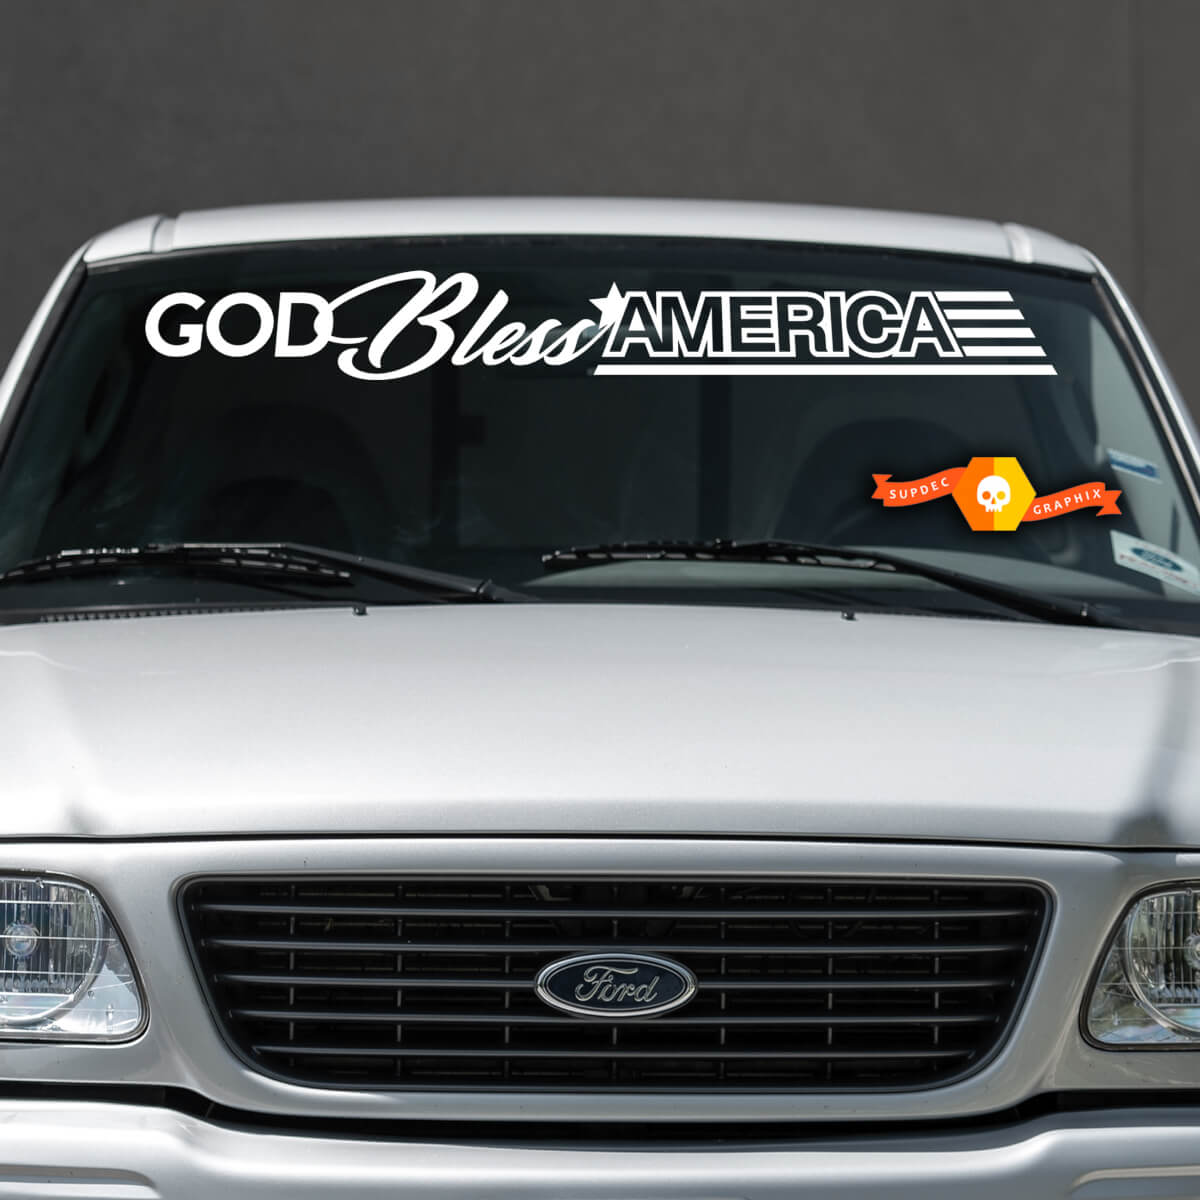 God Bless America Nissan Ford Chevrolet Jeep Auto-Windschutzscheiben- Aufkleber, Grafik, passend für alle Modelle